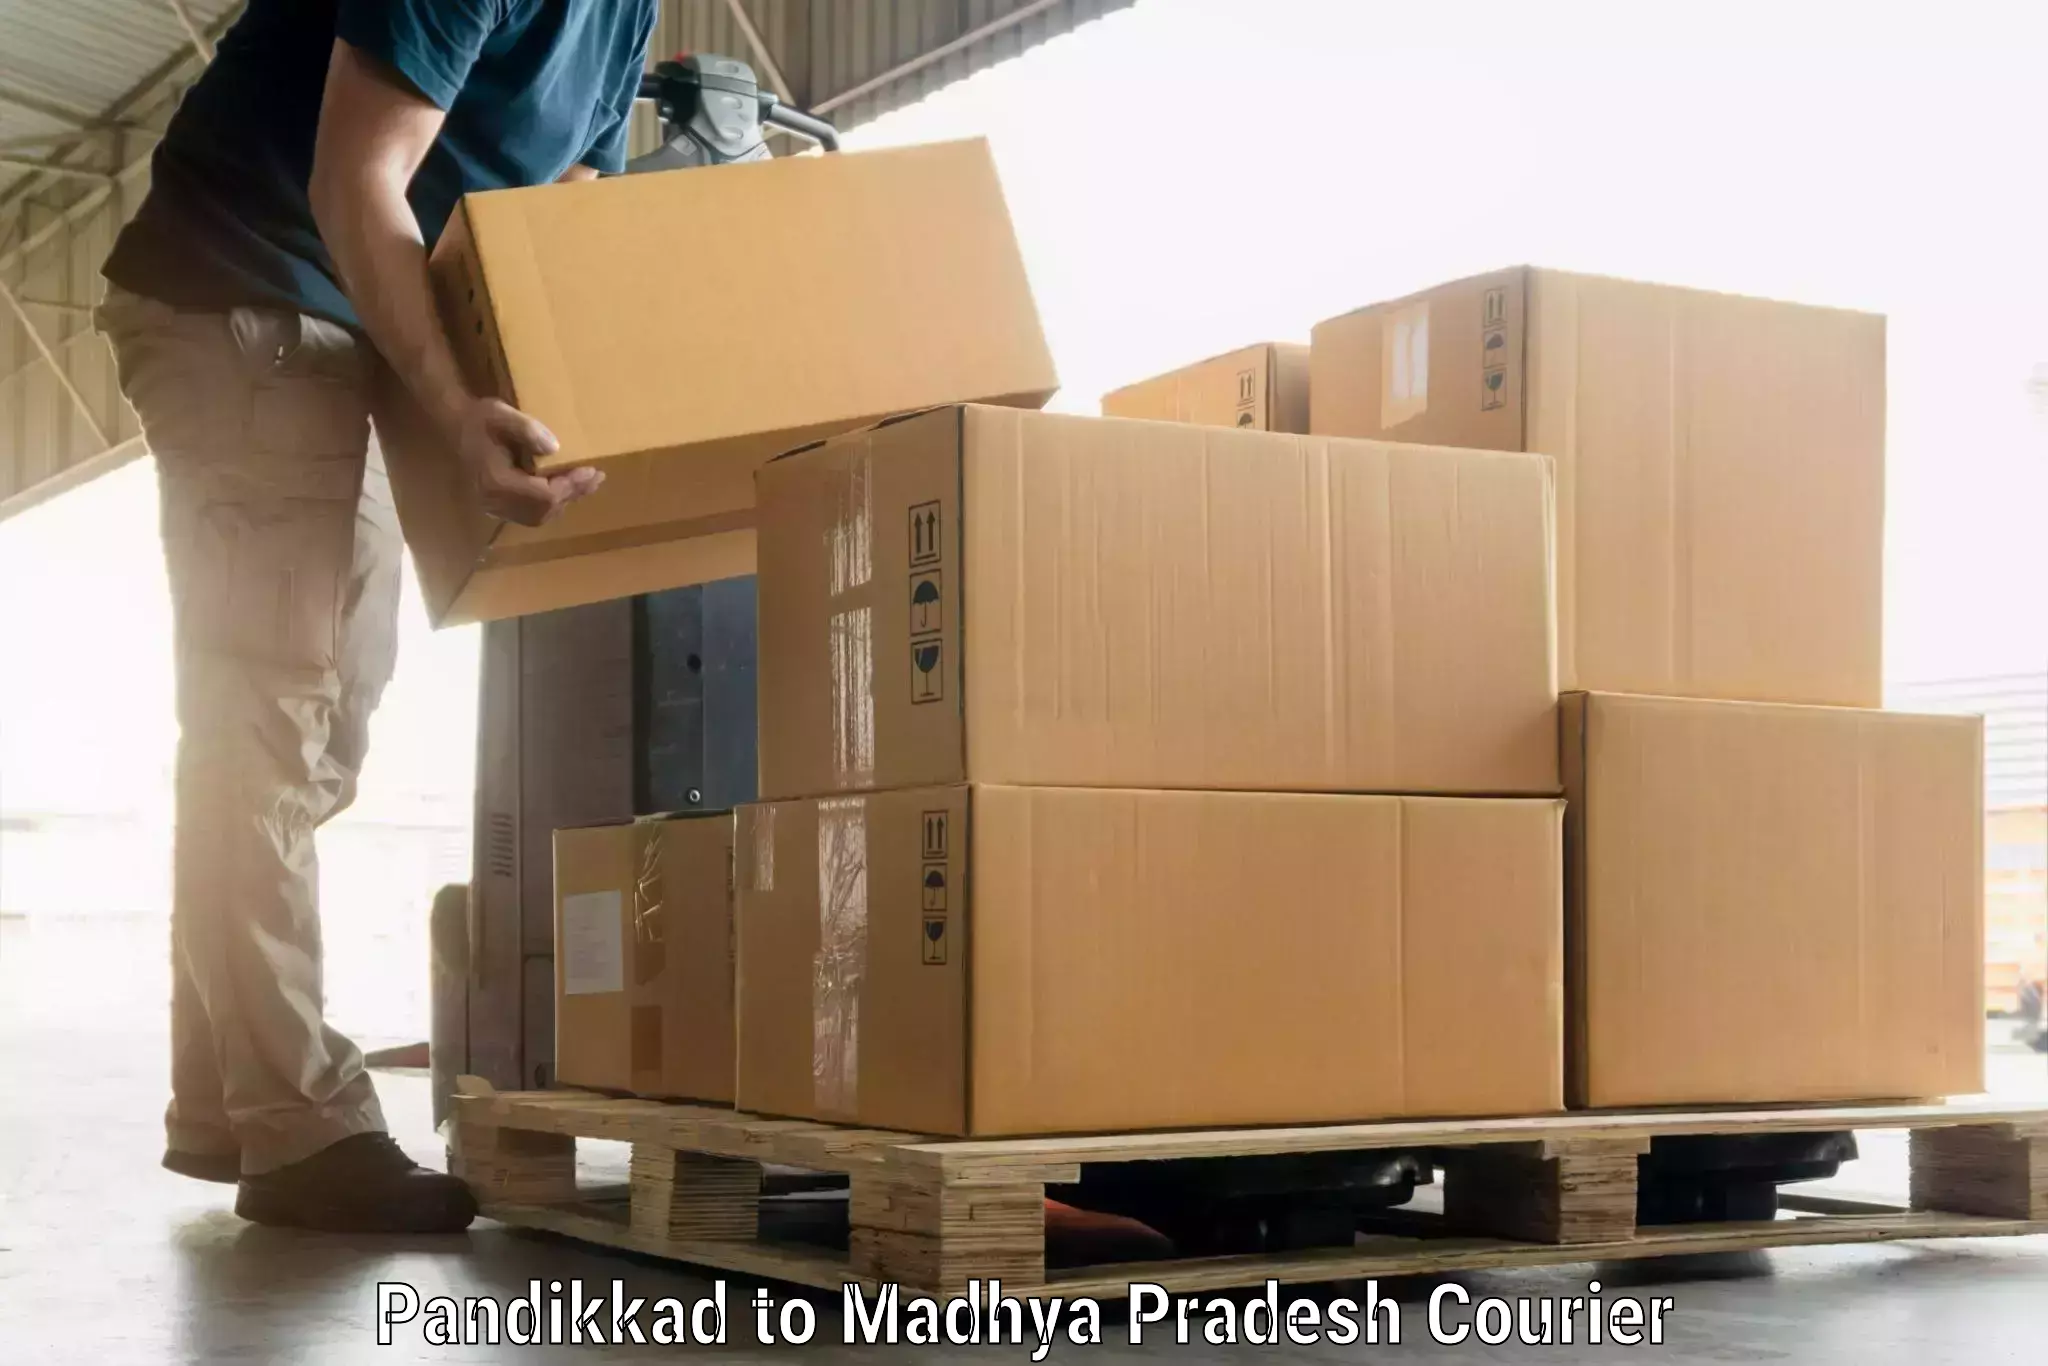 Hassle-free luggage shipping in Pandikkad to Waraseoni